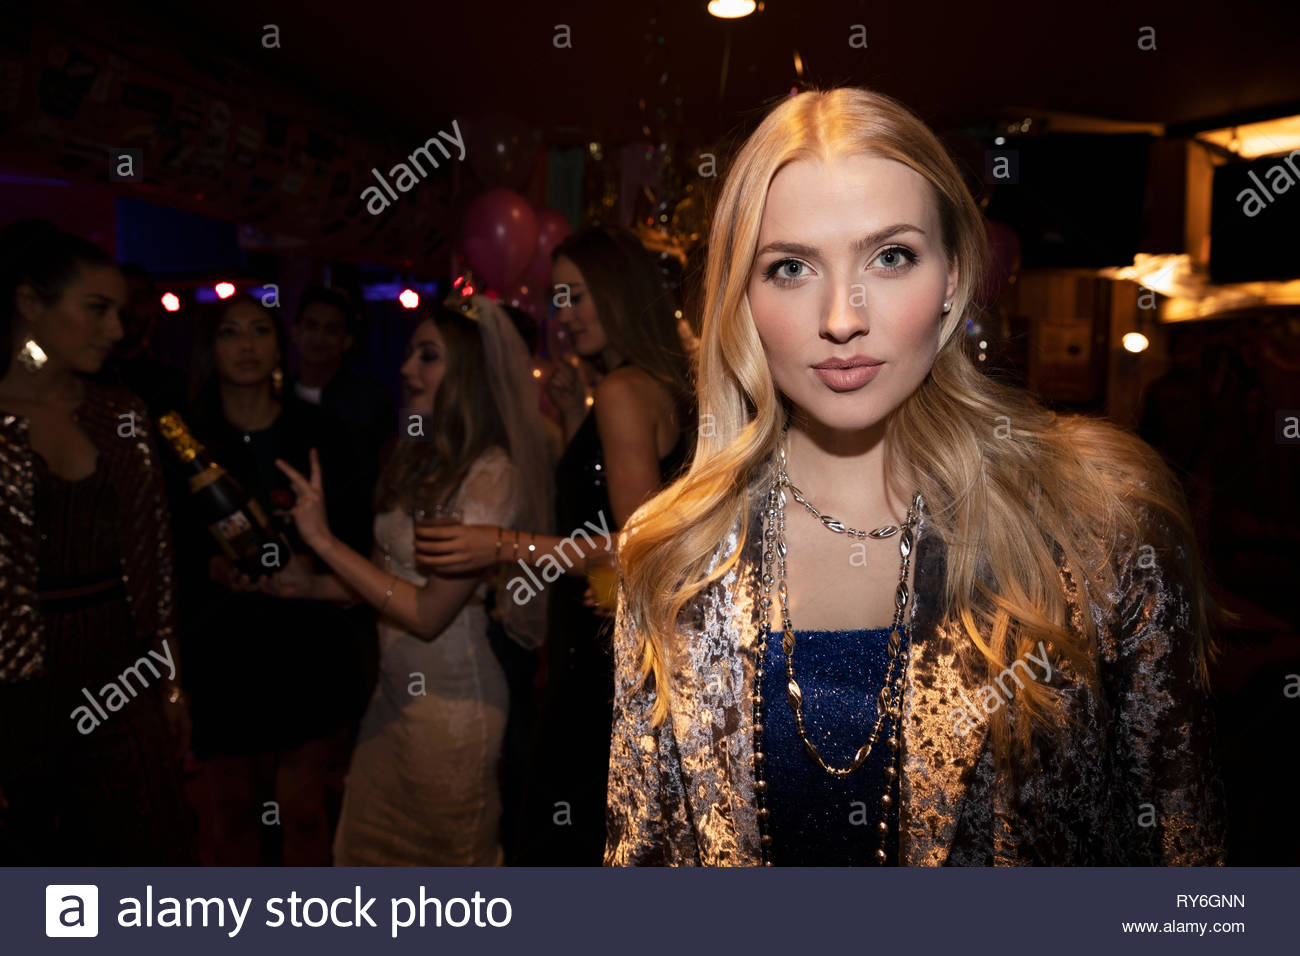 Ritratto fiducioso giovane donna in discoteca Foto Stock